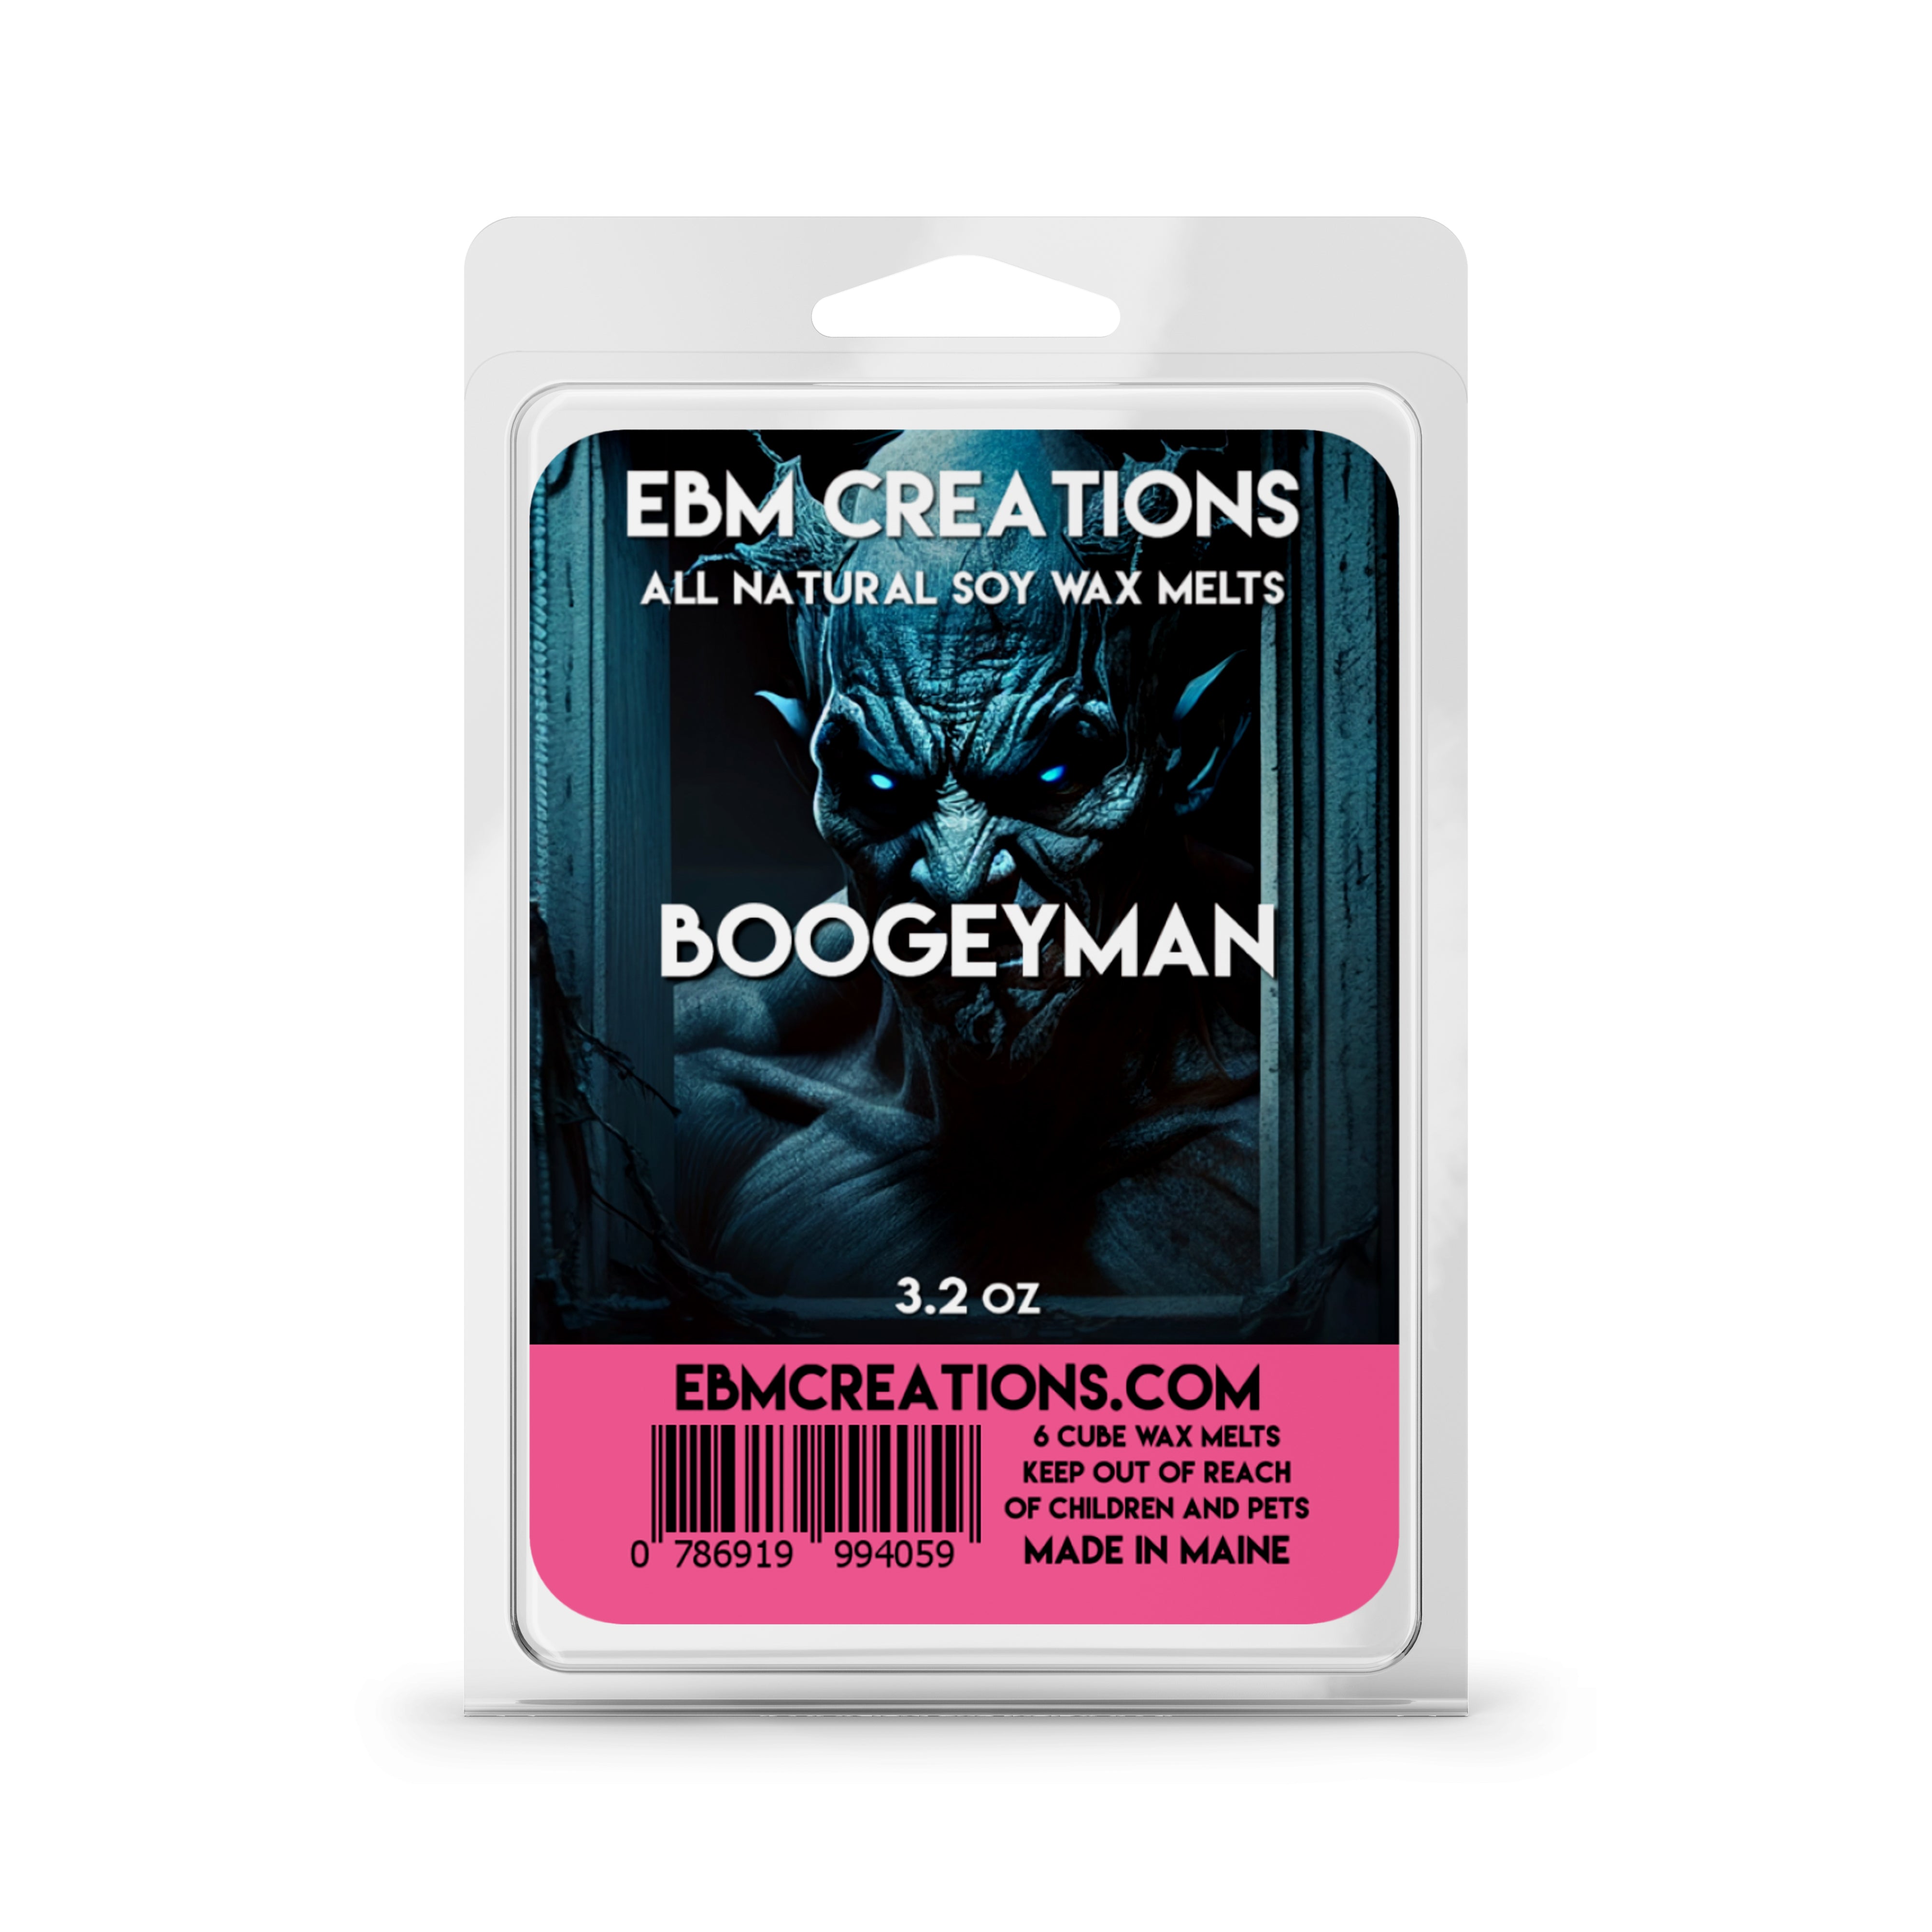 Boogeyman - 3.2 oz Clamshell